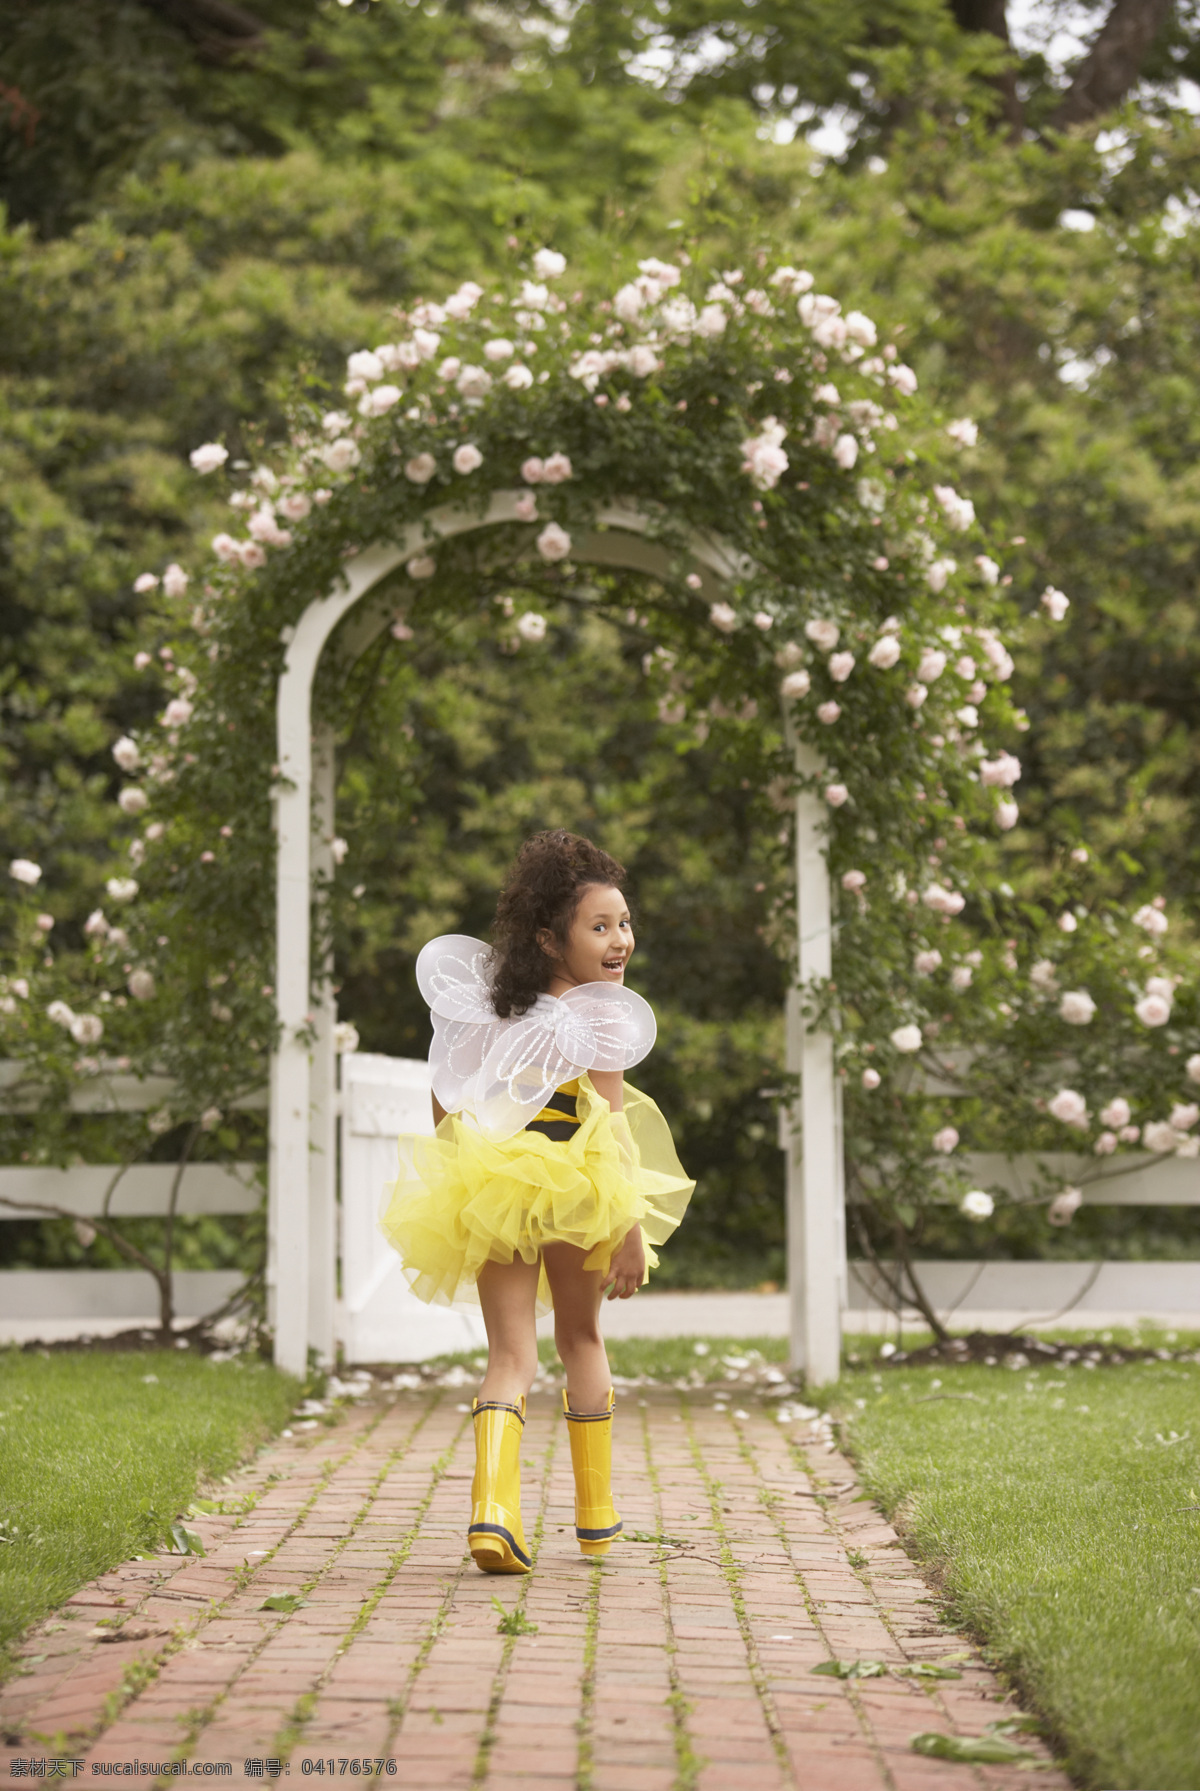 可爱的婚礼花童送花给新娘-蓝牛仔影像-中国原创广告影像素材